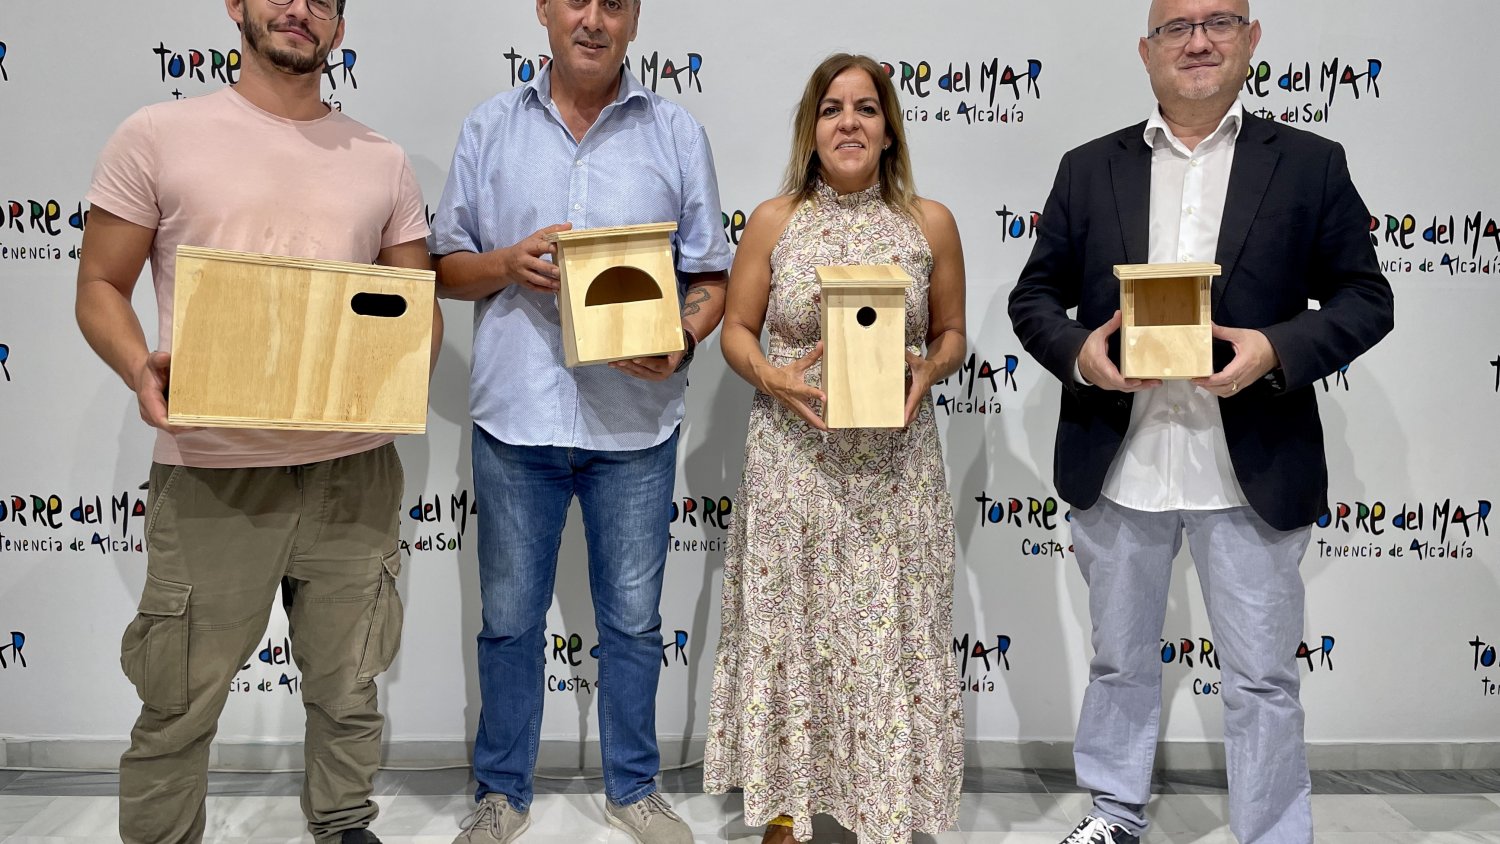 Vélez-Málaga anuncia que instalará cajas nido para paliar la merma de aves autóctonas